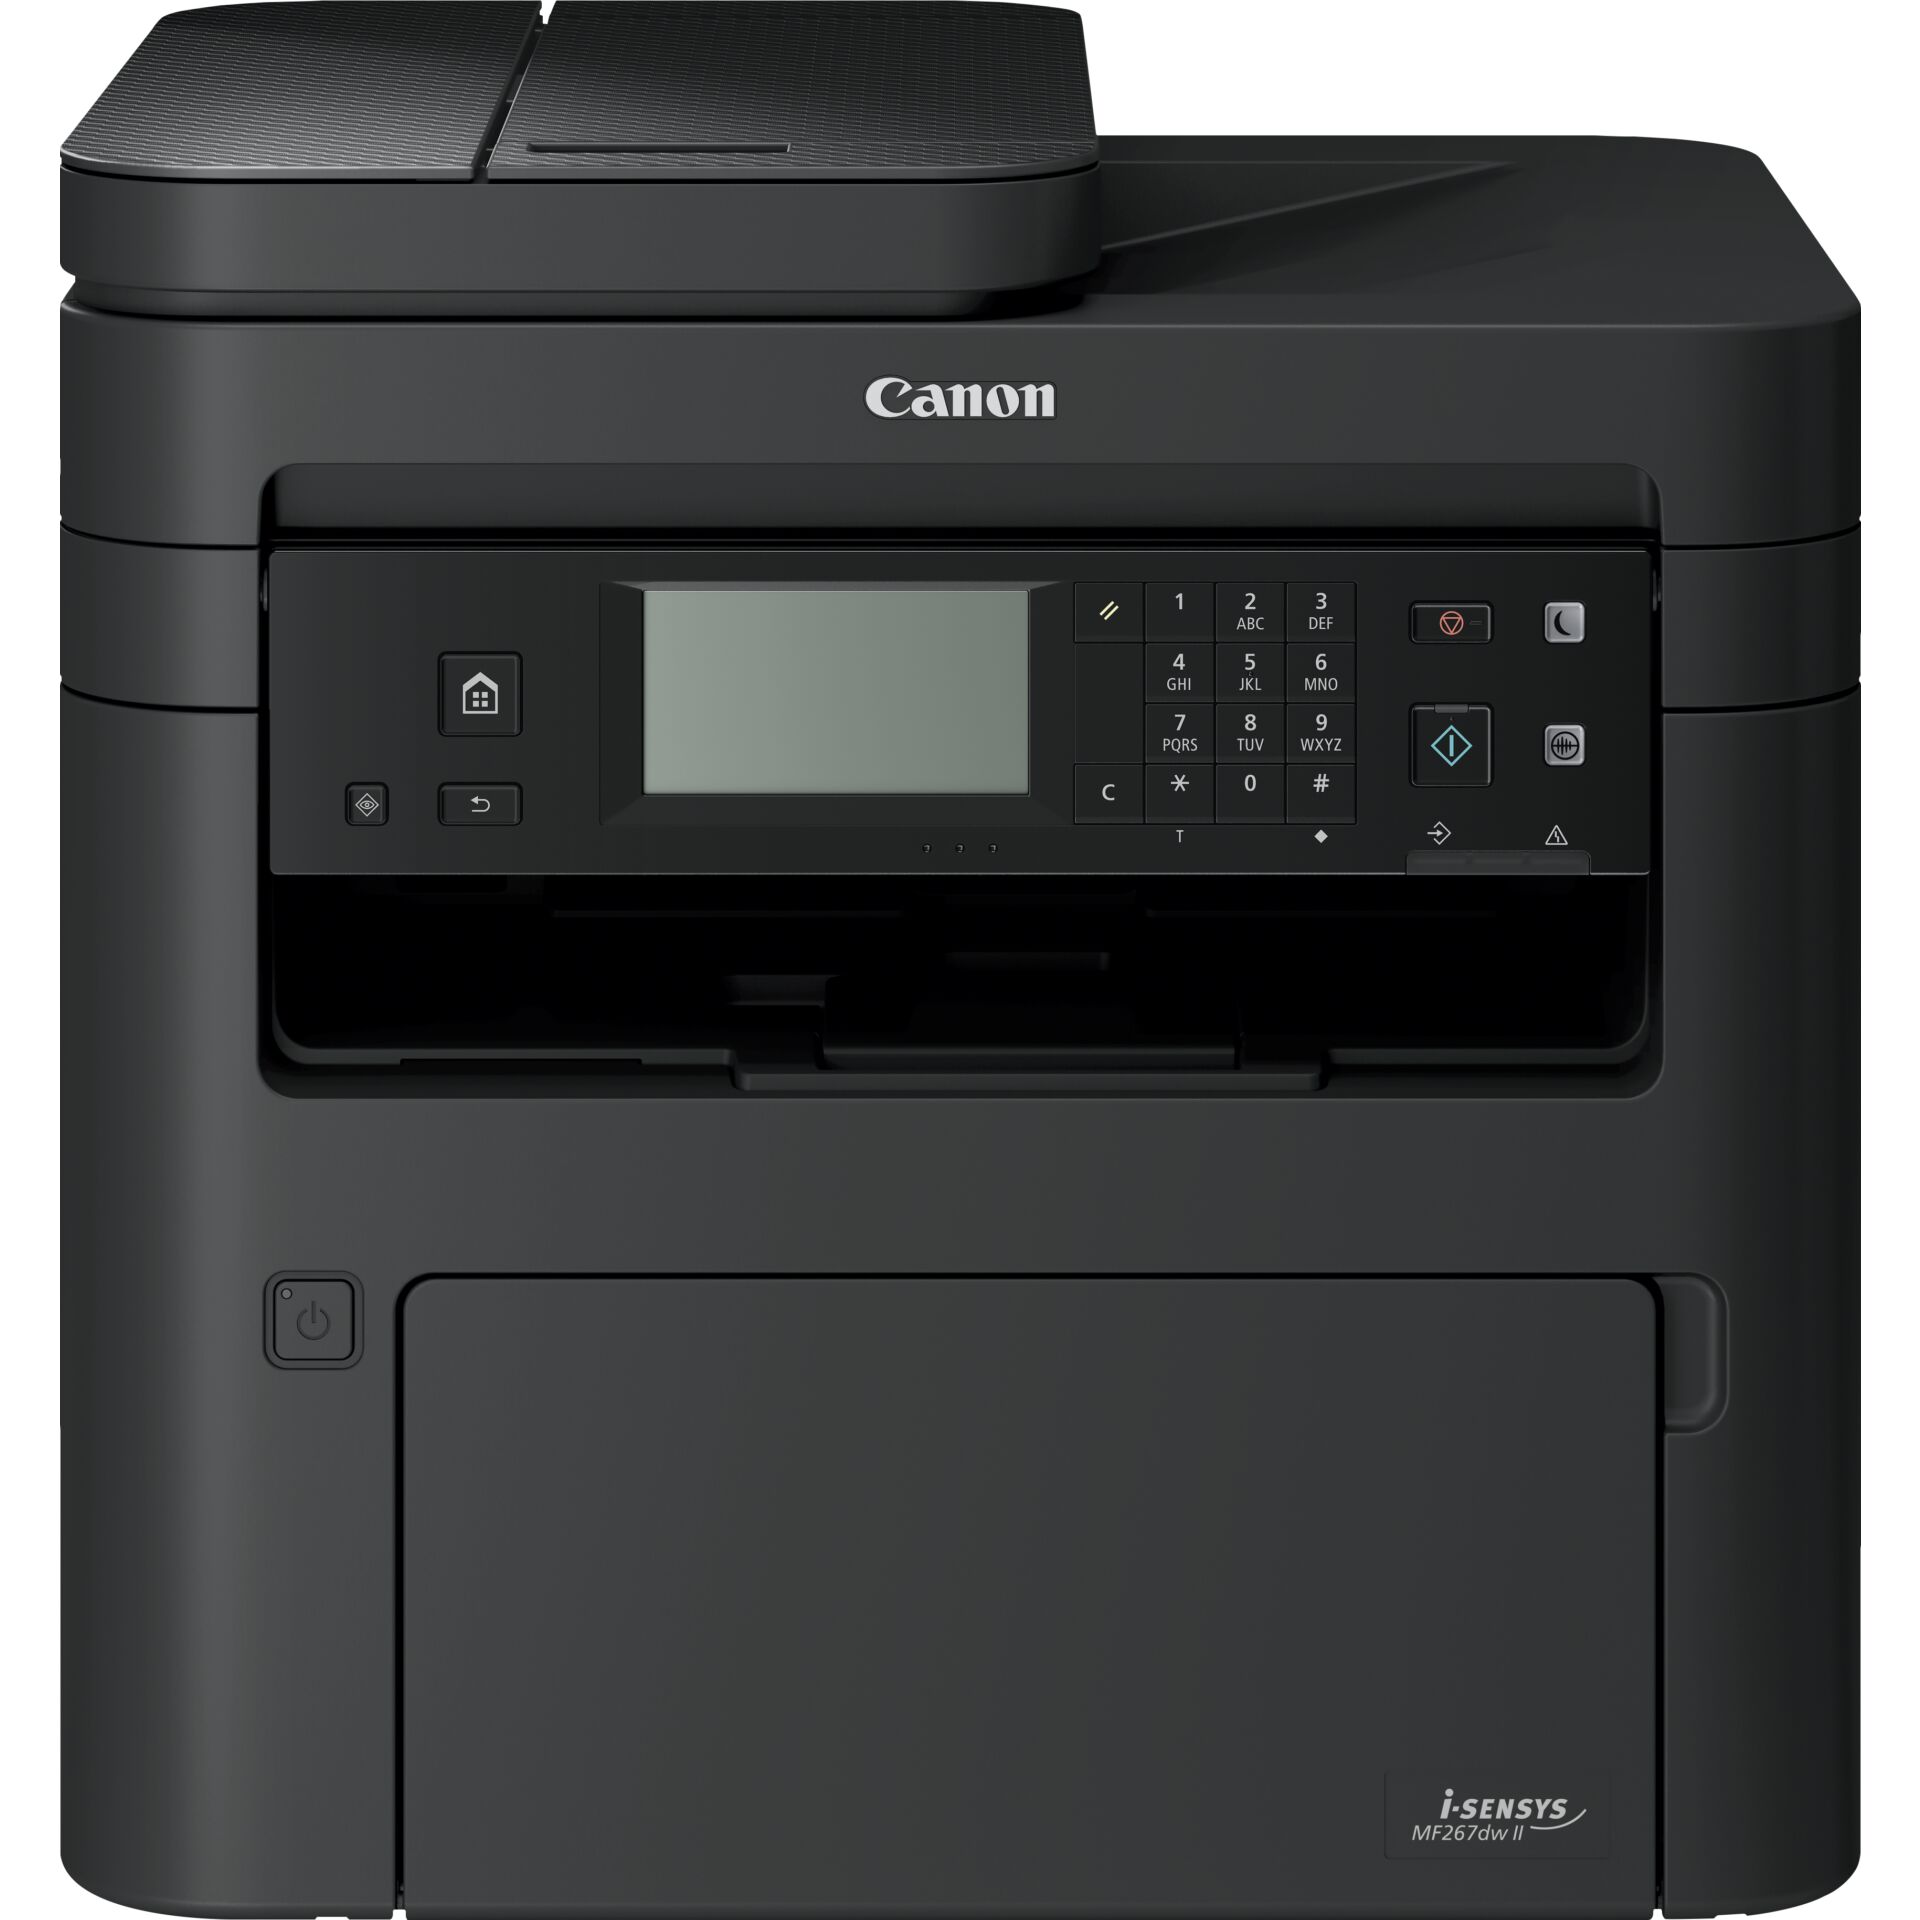 Canon i-SENSYS MF267dw II, WLAN, Laser, einfarbig- Multifunktionsgerät, Drucker/Scanner/Kopierer/Fax